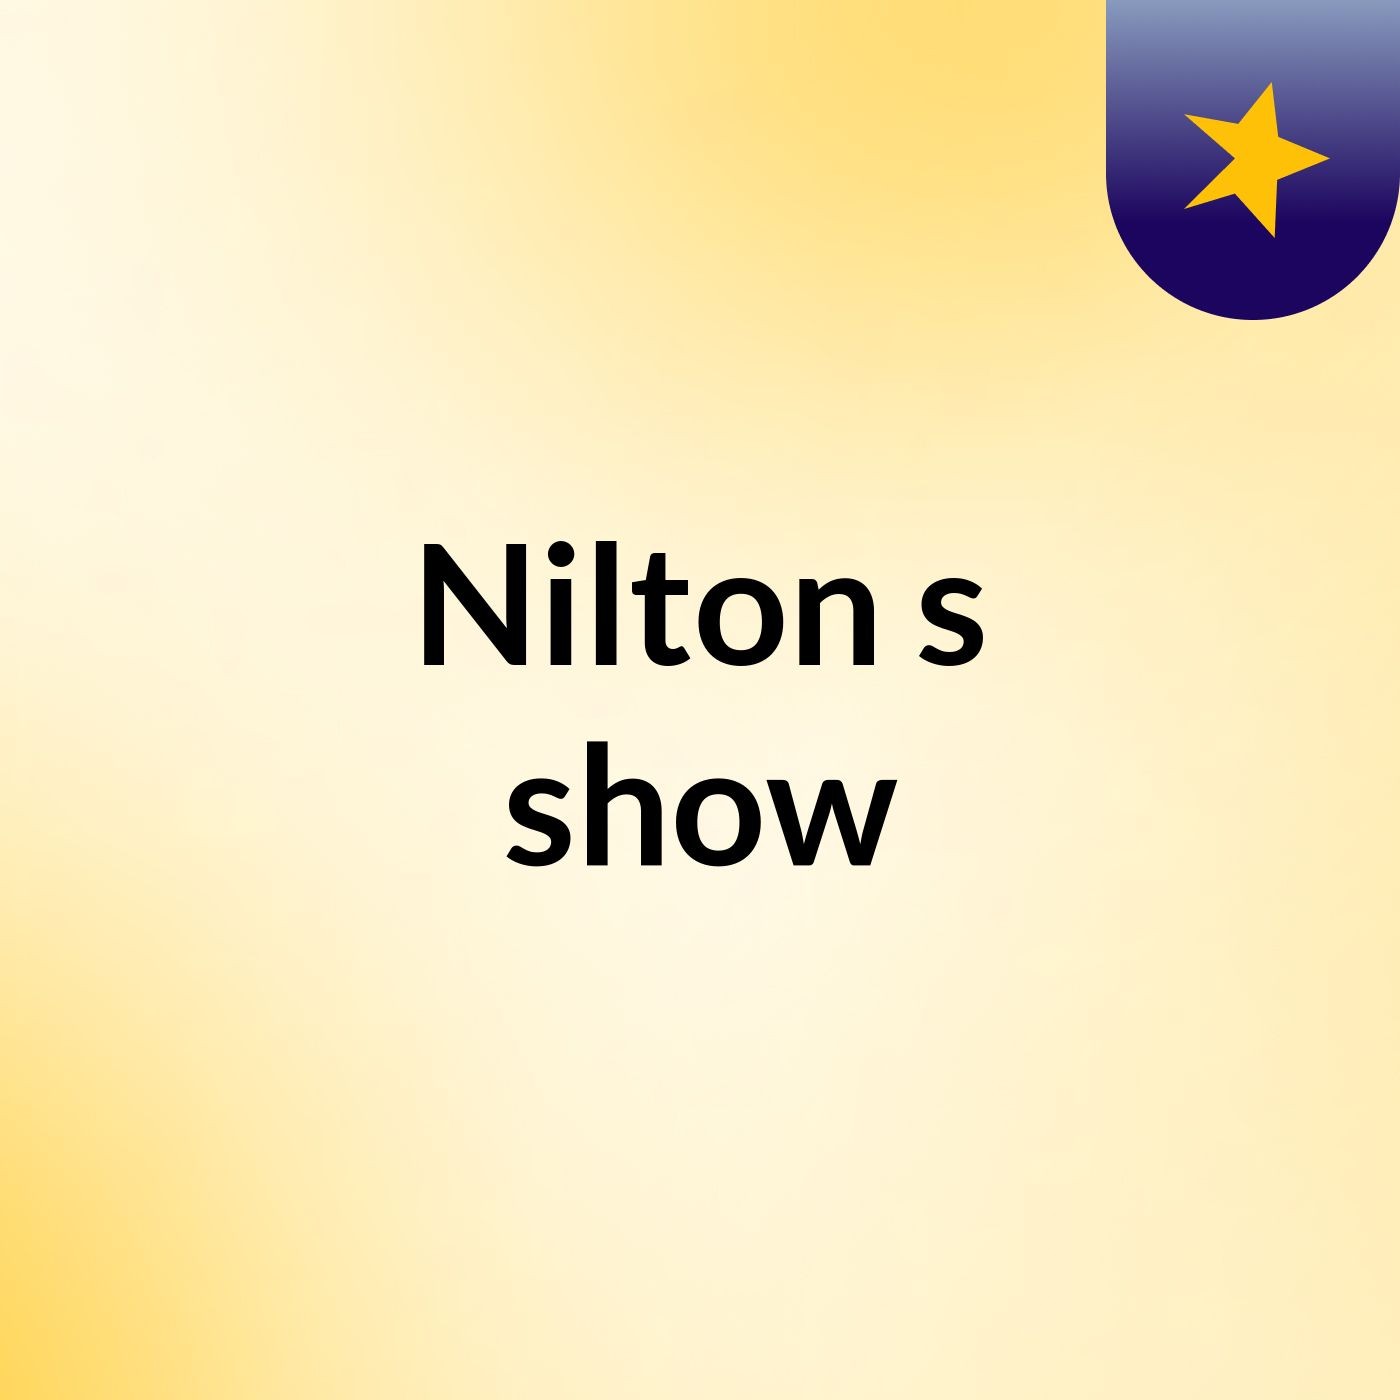 Nilton's show